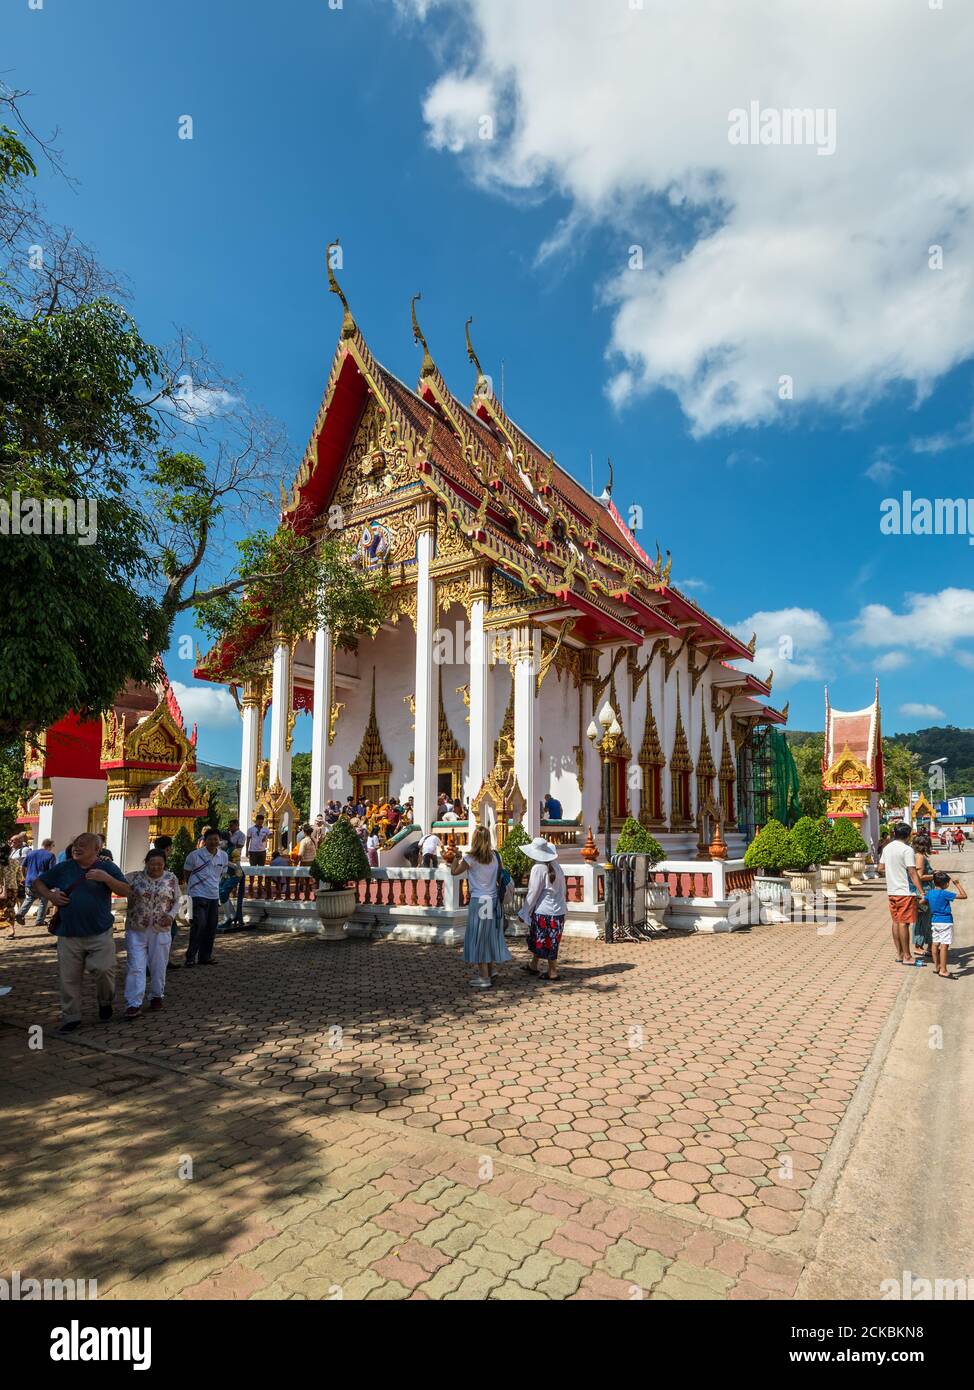 Phuket, Thailandia - 29 novembre 2019: Vista del tempio di Wat Chalong - famose attrazioni e luogo di culto nella provincia di Phuket, Thailandia. Foto Stock